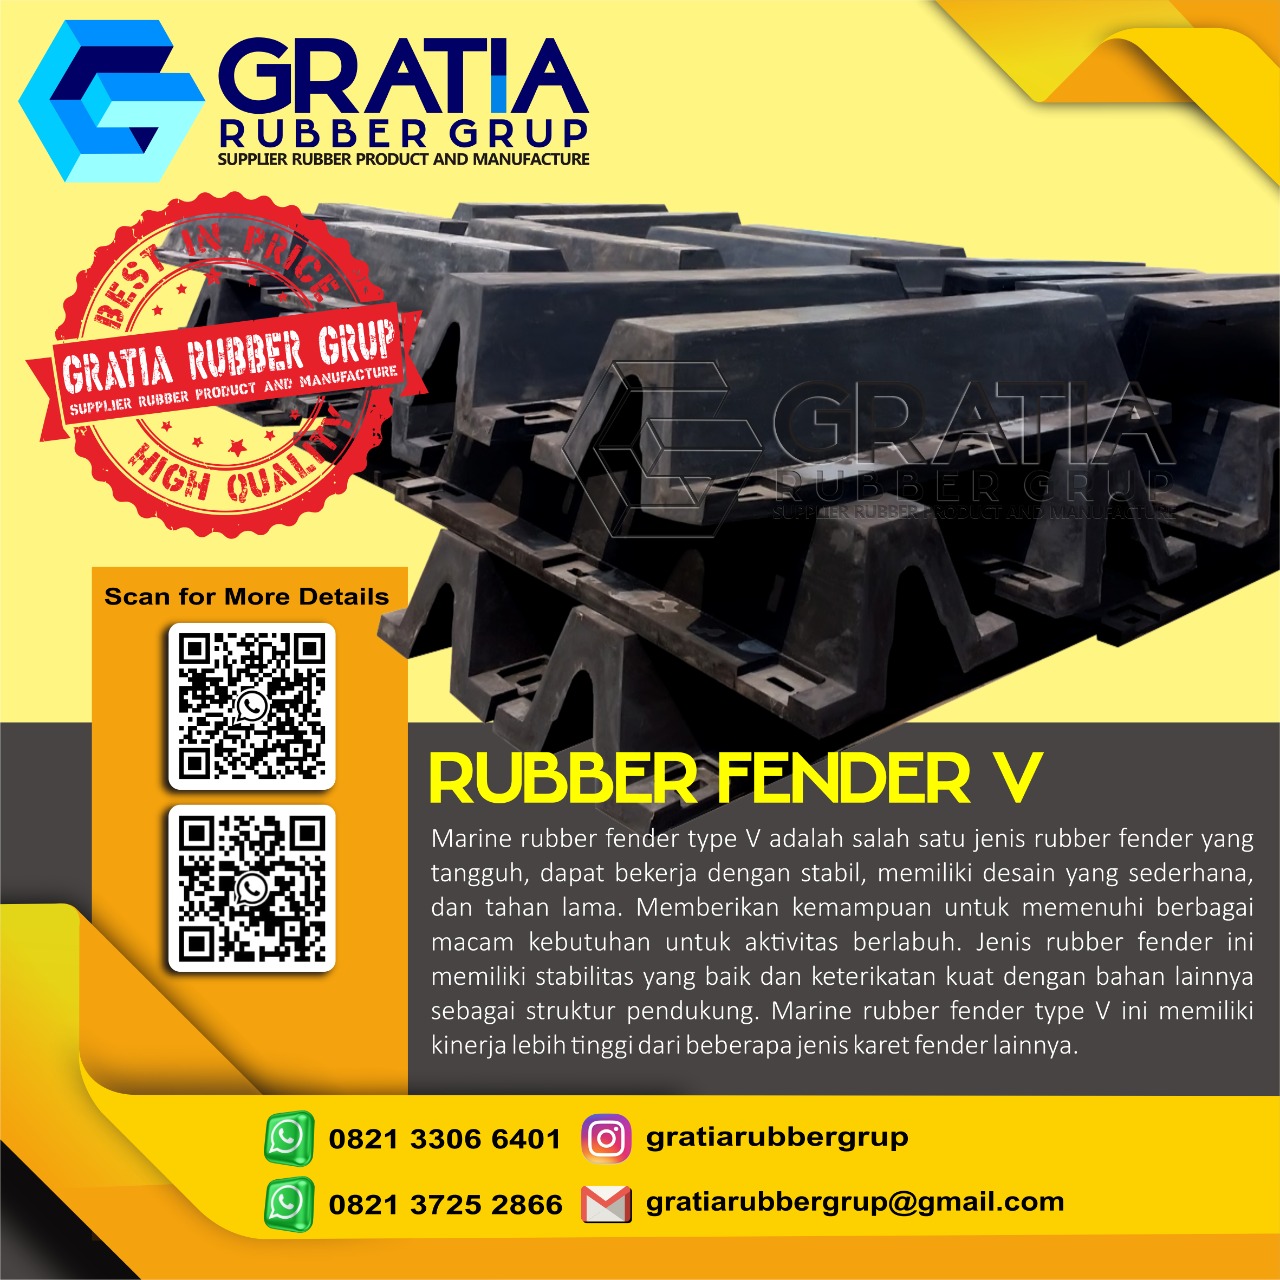 Harga Rubber Fender Murah Dan Berkualitas  Melayani Pengiriman Ke Jakarta Pusat Hub 0821 3306 0461